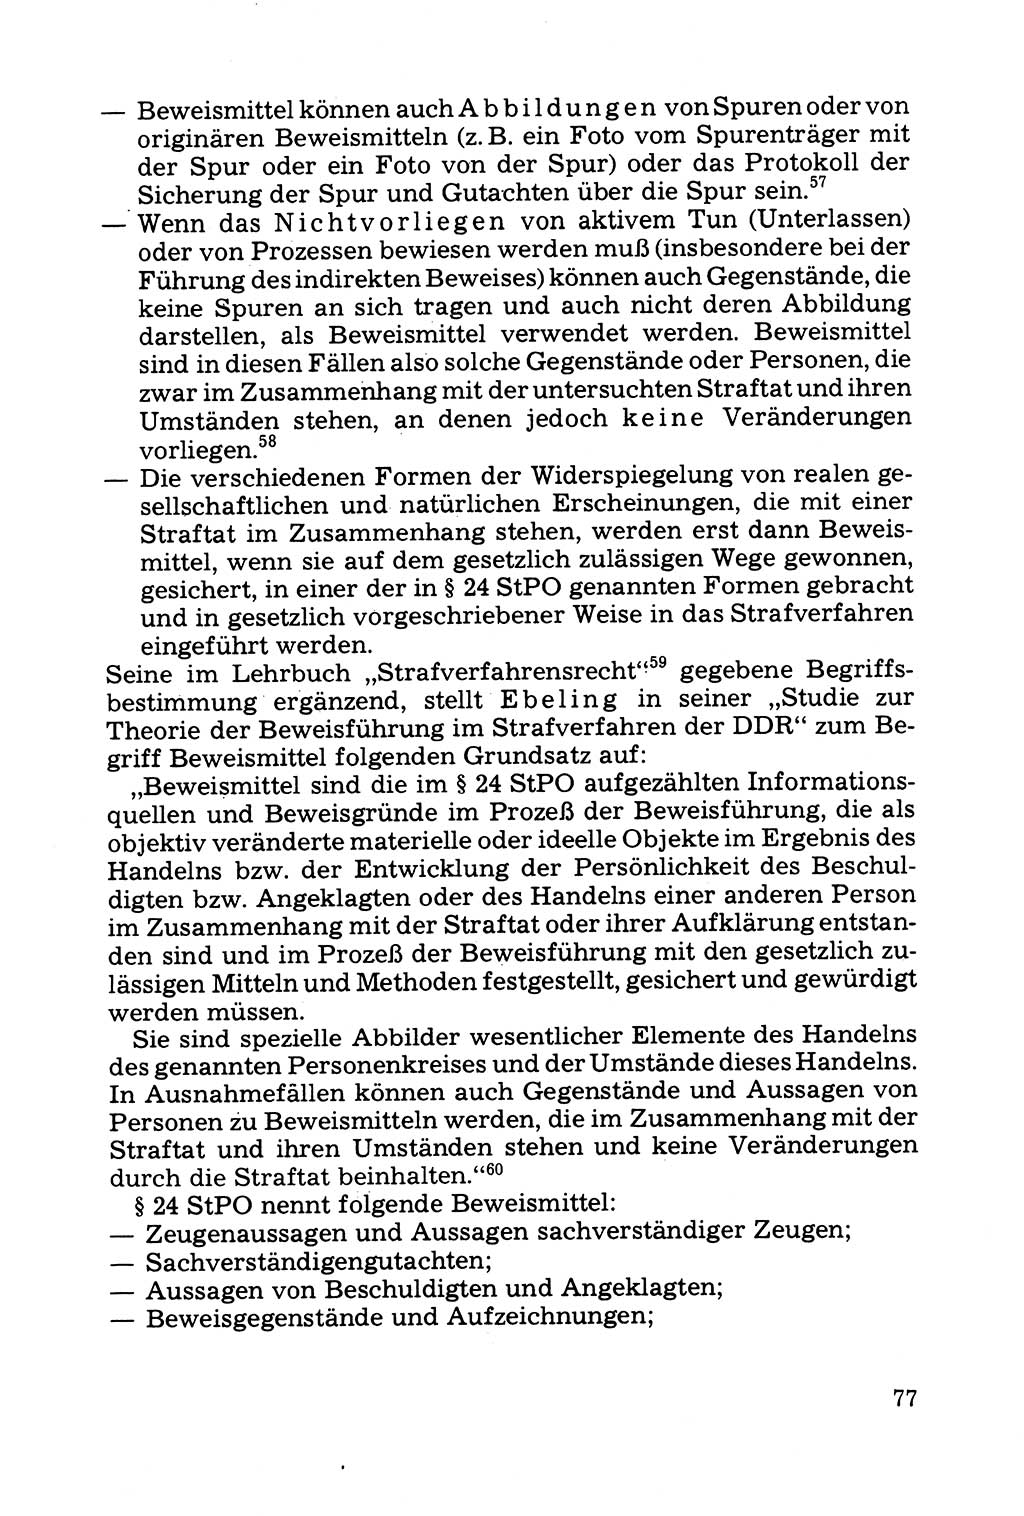 Grundfragen der Beweisführung im Ermittlungsverfahren [Deutsche Demokratische Republik (DDR)] 1980, Seite 77 (Bws.-Fhrg. EV DDR 1980, S. 77)